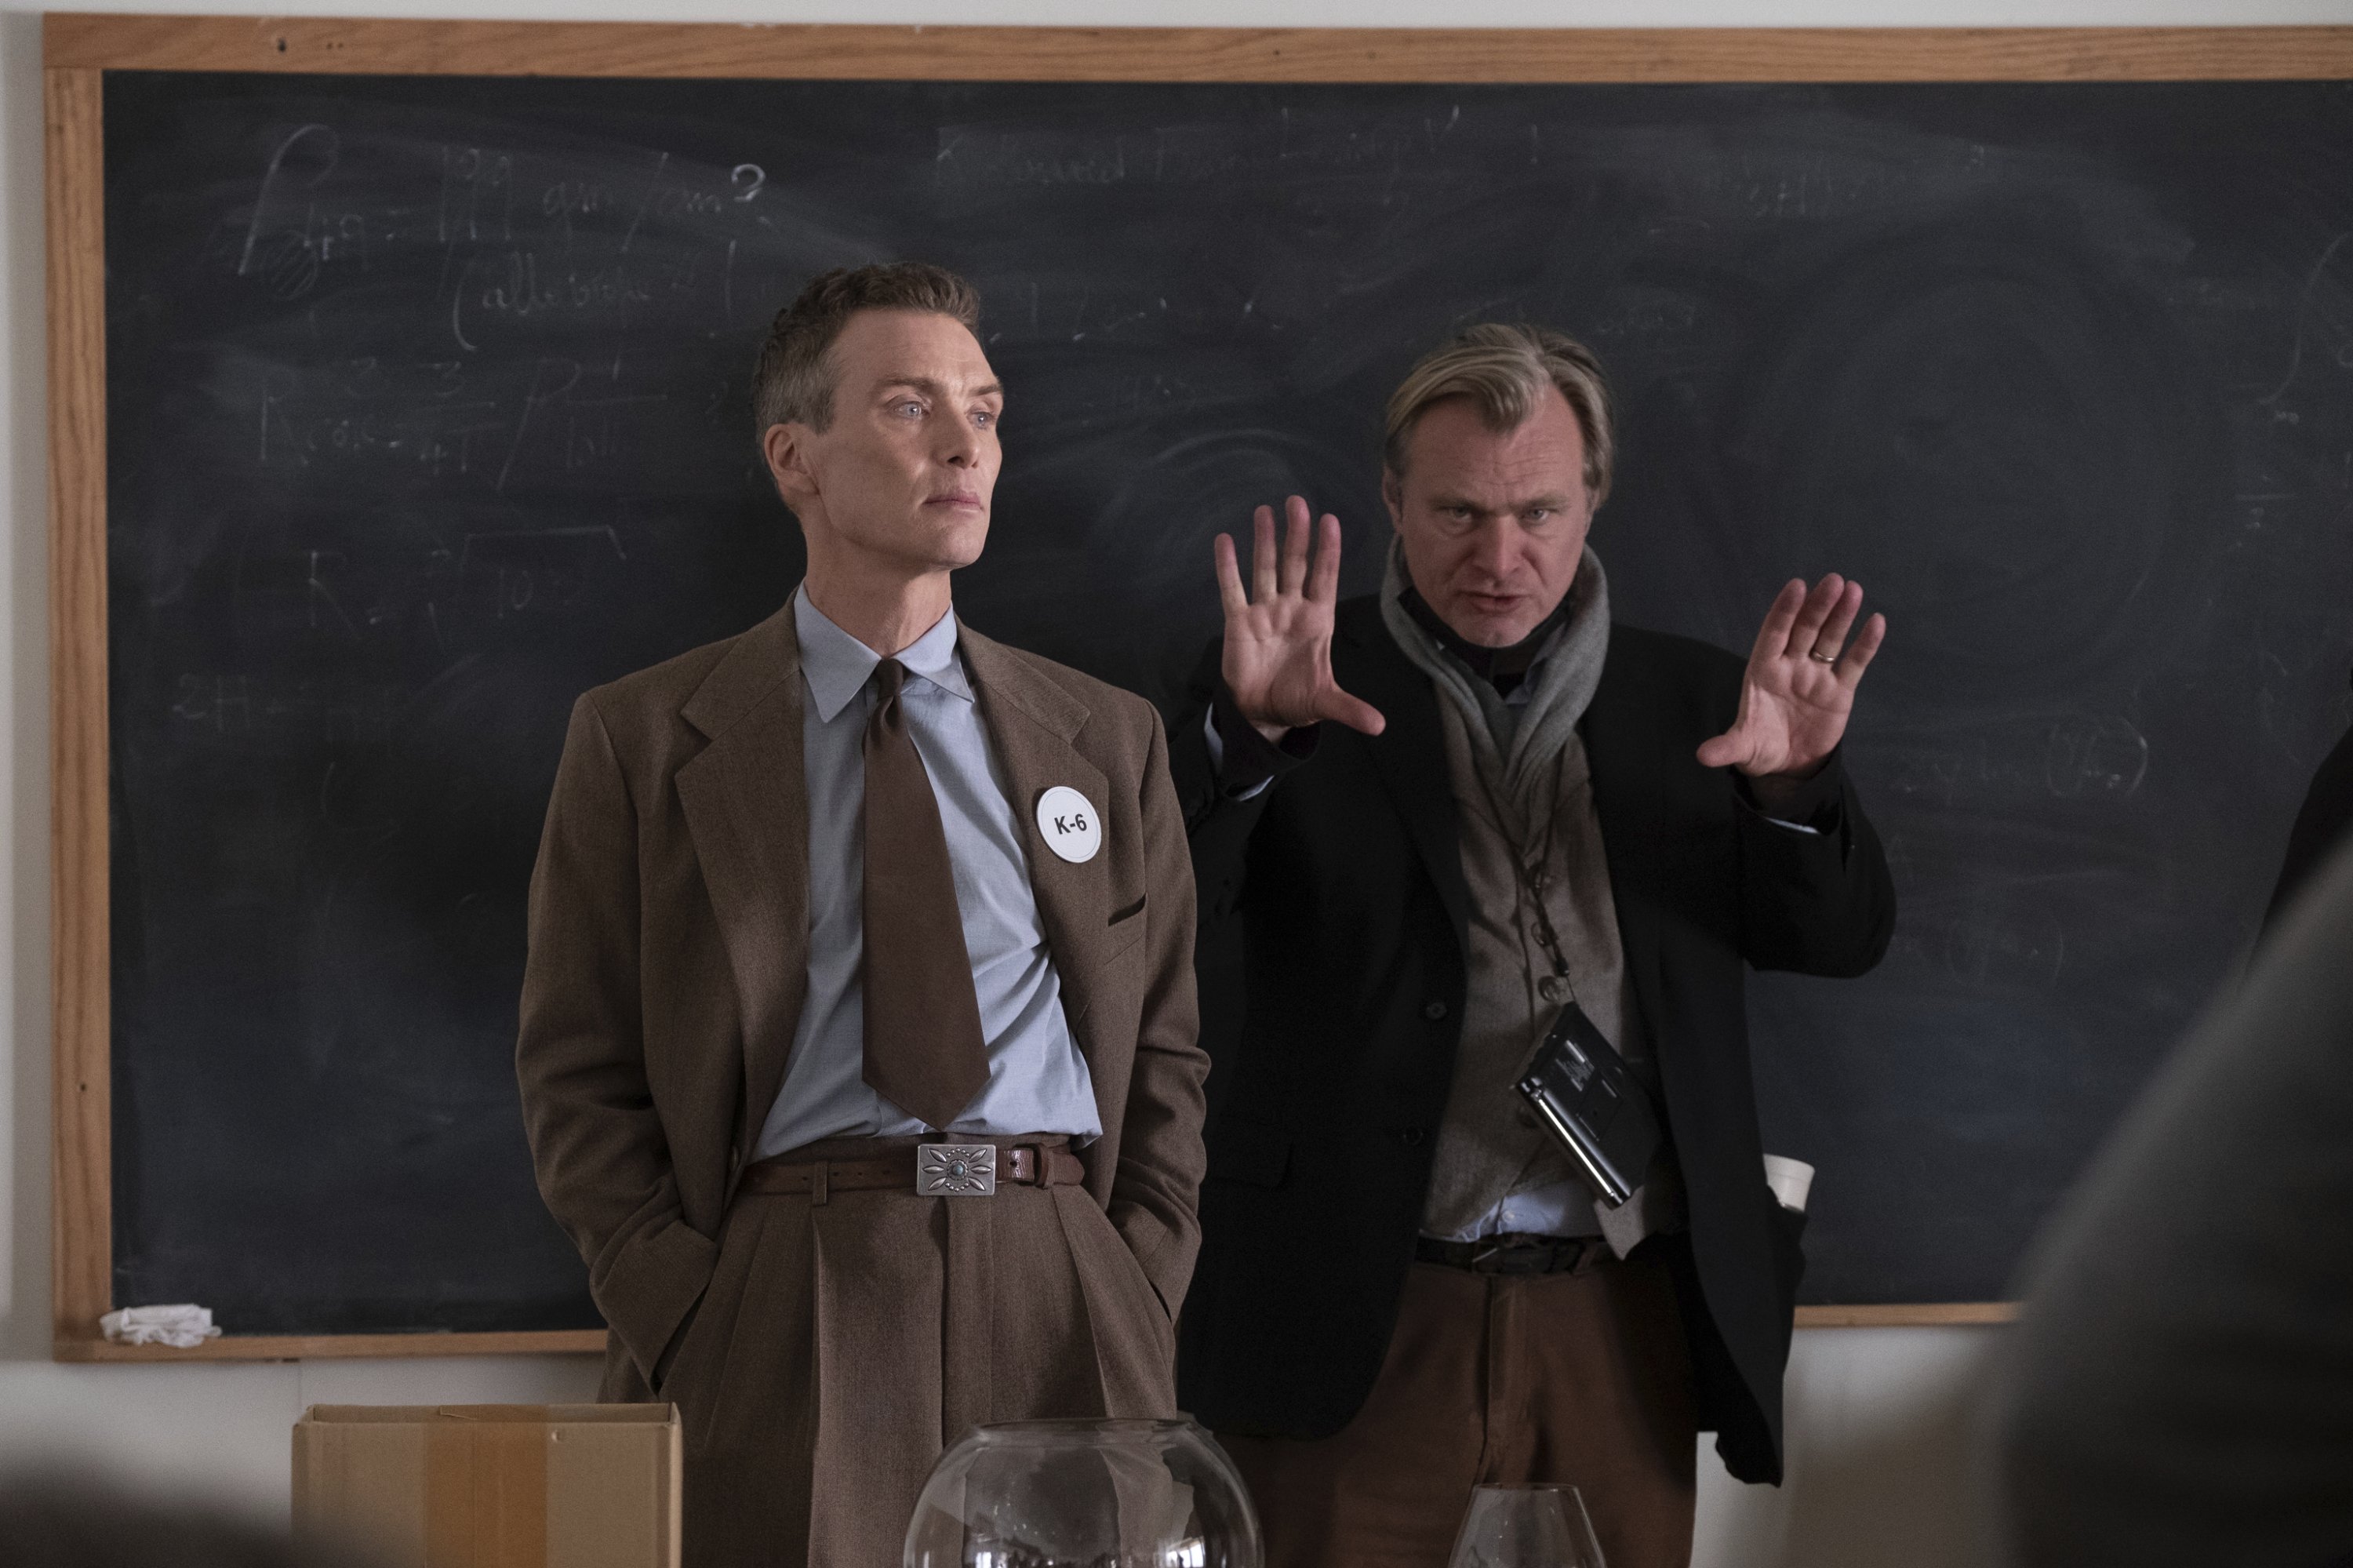 Gambar yang dirilis oleh Universal Pictures ini menunjukkan aktor Cillian Murphy (kiri) dan pembuat film Christopher Nolan di lokasi syuting 